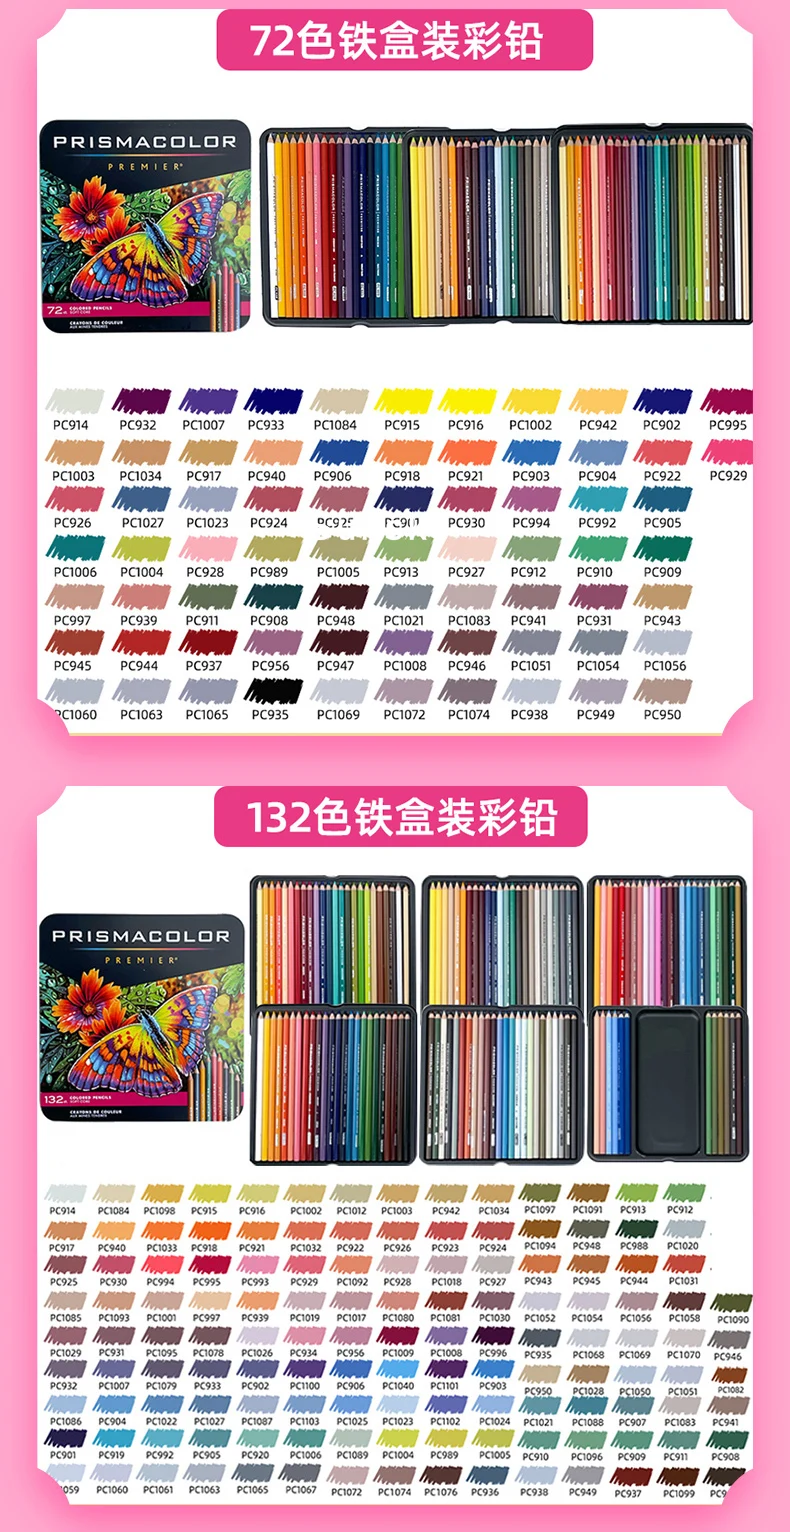 12 24 36 48 72 150 цветных карандашей Prismacolor Premier с мягкими стержнями, Профессиональный художник маслянистый цветной карандаш приятных цветов 5